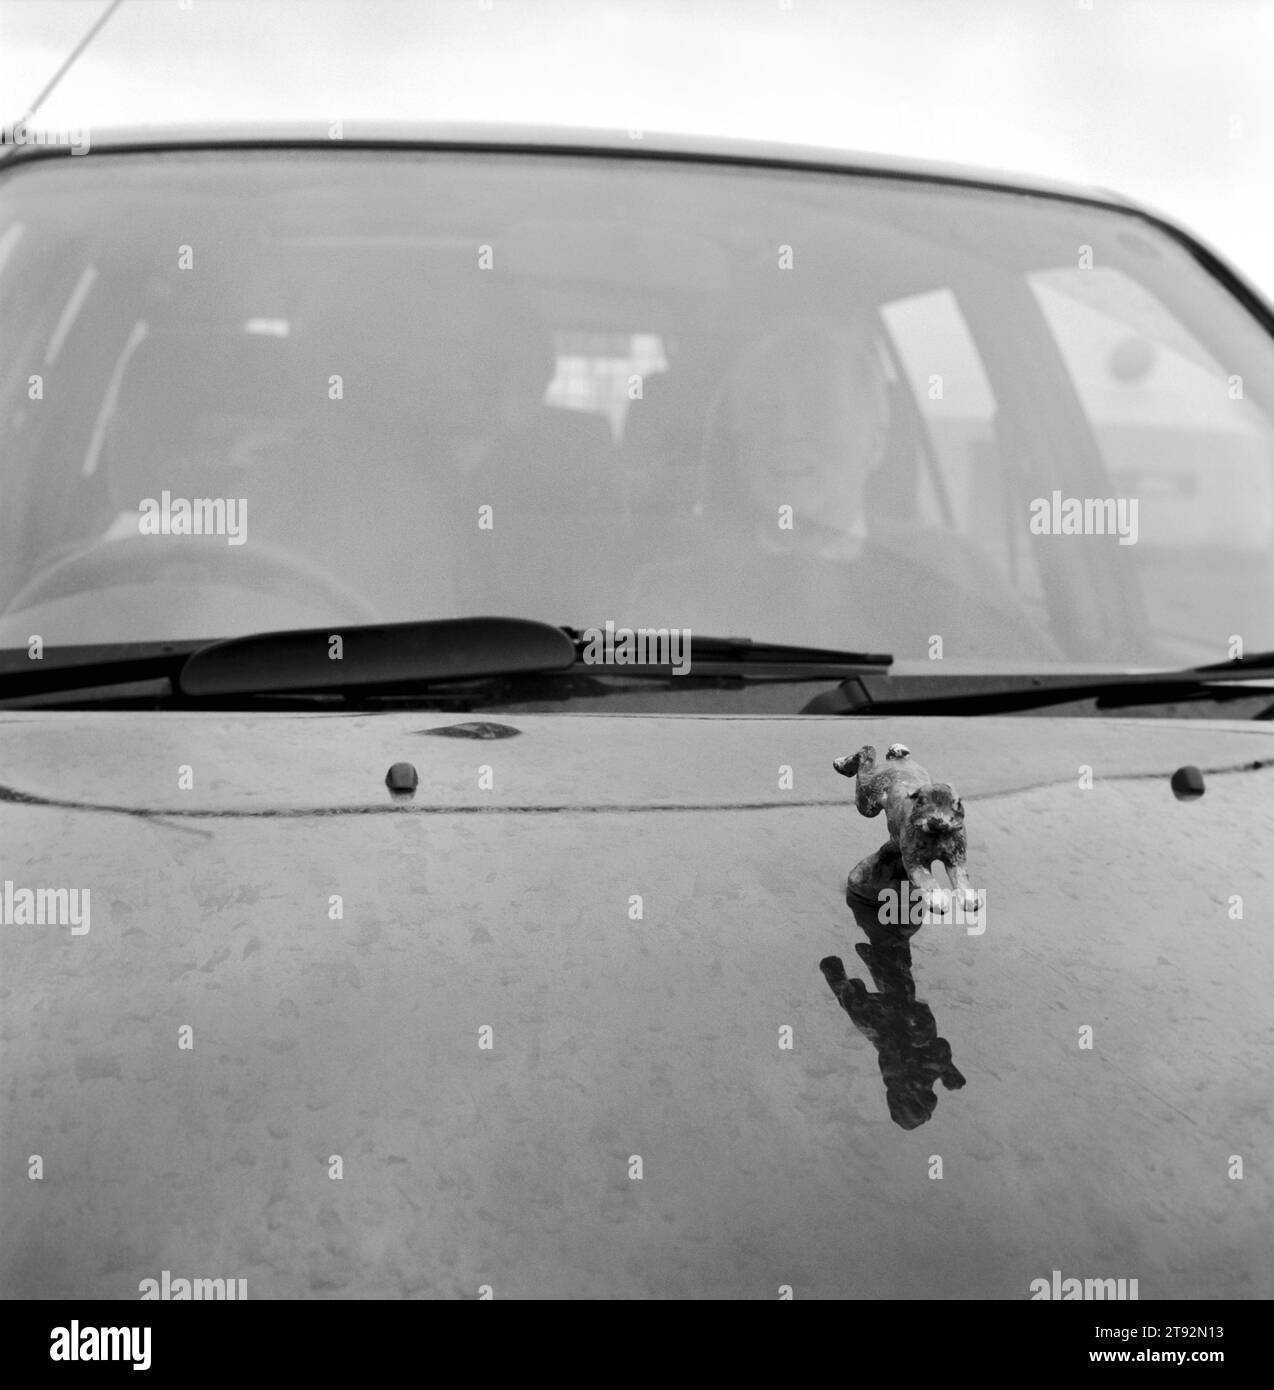 Hare Cursing. Una familia de caza se sienta a la lluvia en su coche. El capó está adornado con una mascota de una liebre marrón común en pleno vuelo. Greyhound 2000 Meet. Cerca de seis millas abajo, Newmarket, Suffolk. Inglaterra 2000 HOMER SYKES Foto de stock